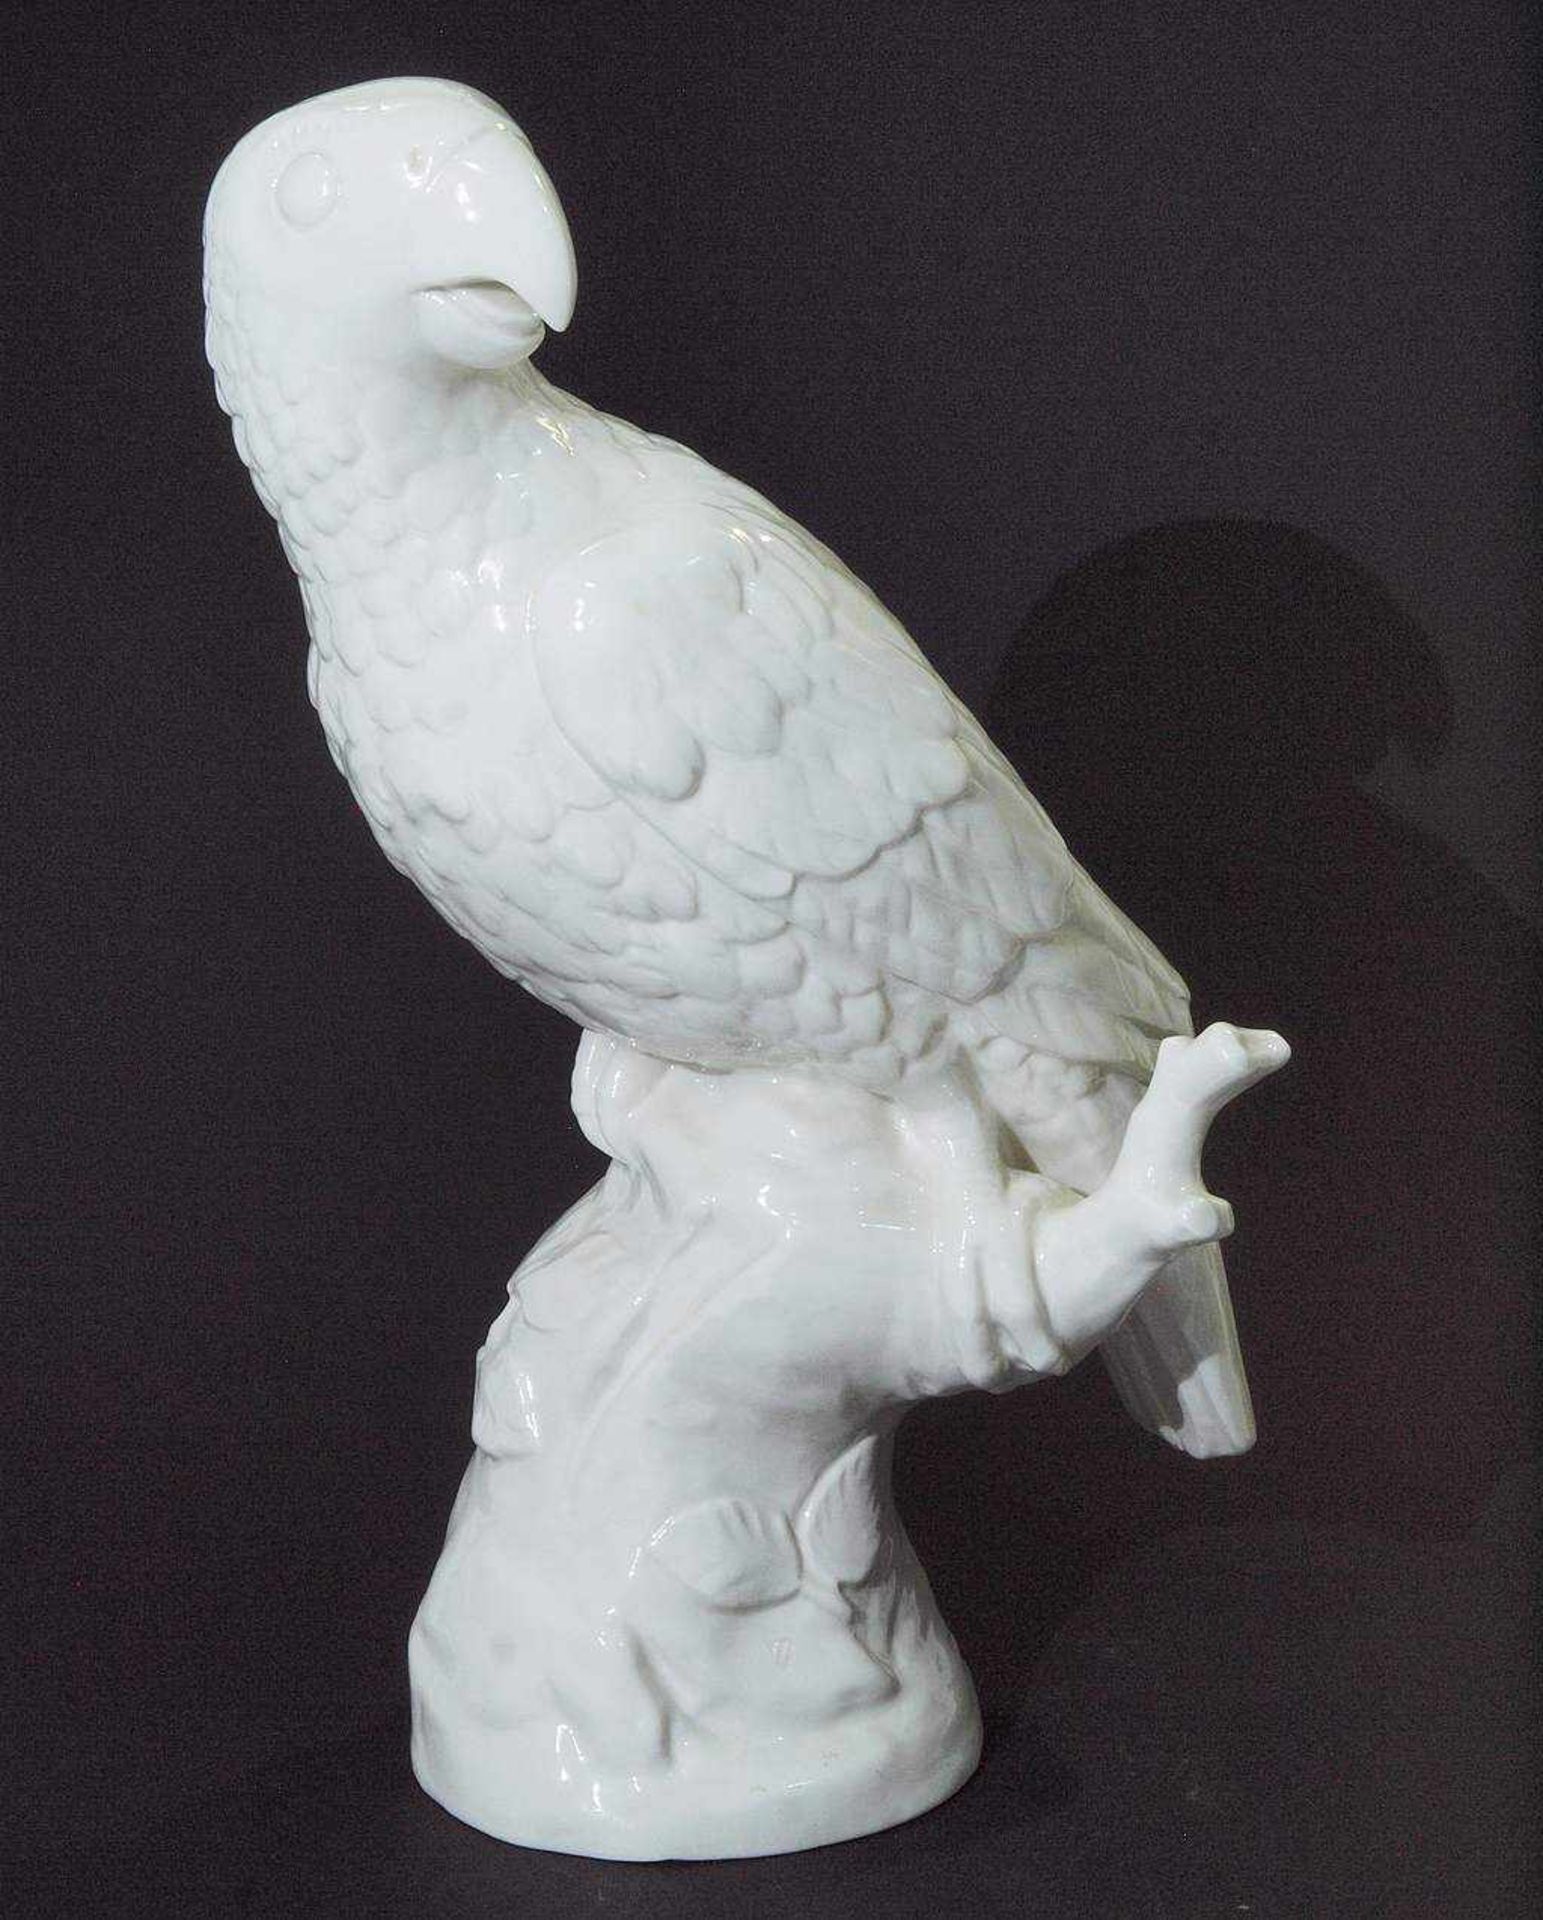 Papagei auf Natursockel. Papagei auf Natursockel. NYMPHENBURG Marke 1997. Modell Nr. 180. - Bild 2 aus 5